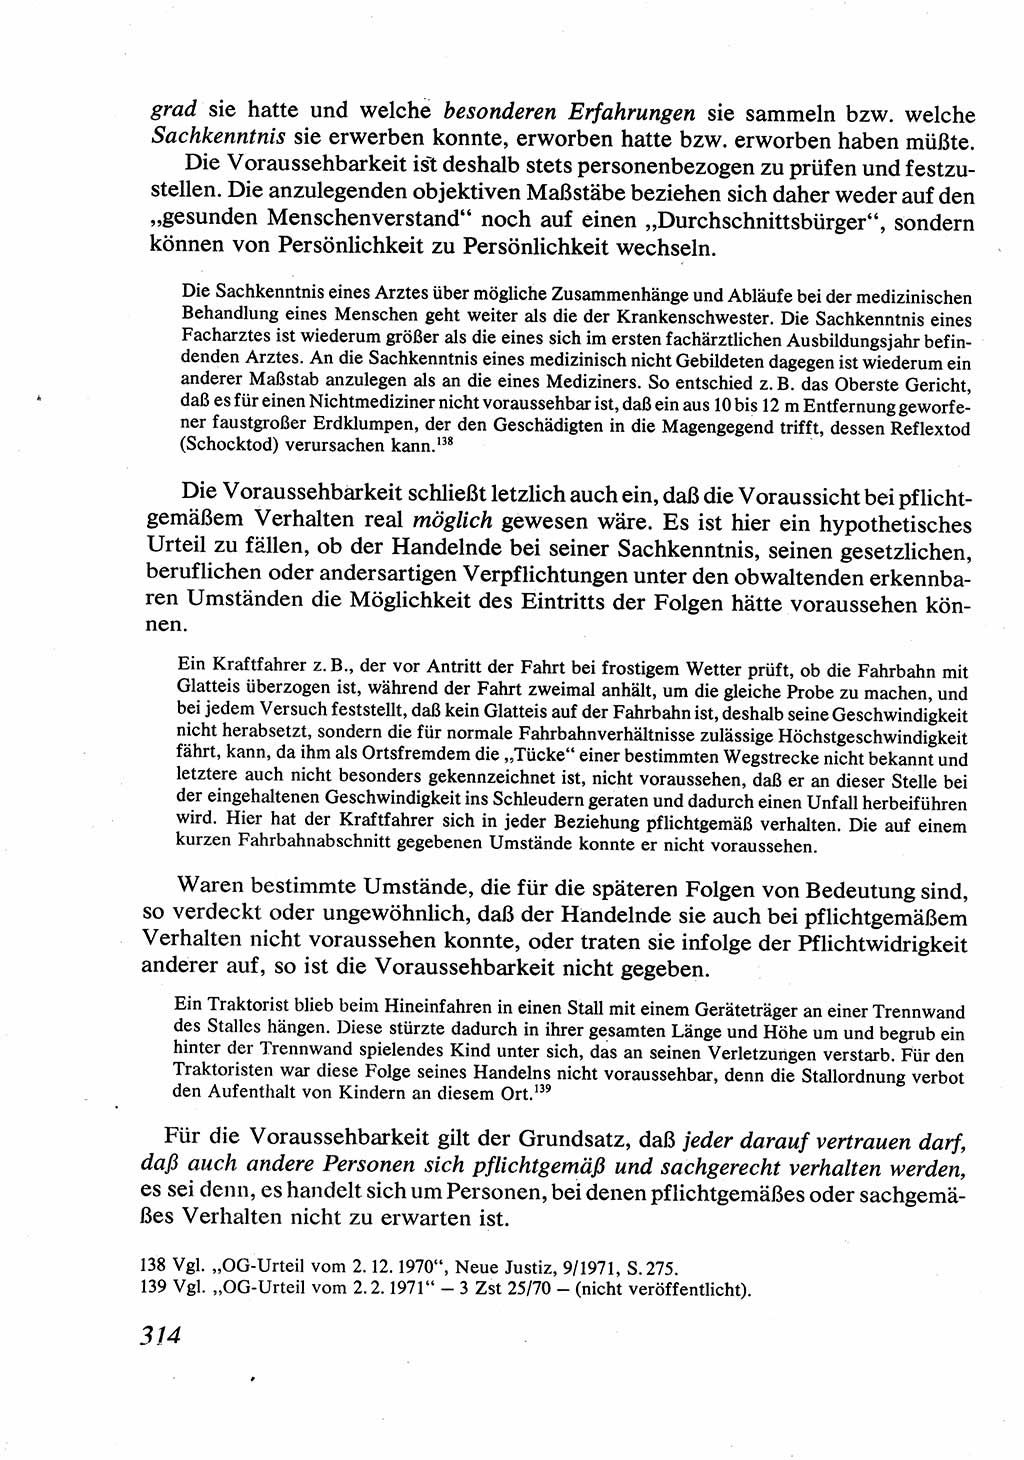 Strafrecht [Deutsche Demokratische Republik (DDR)], Allgemeiner Teil, Lehrbuch 1976, Seite 314 (Strafr. DDR AT Lb. 1976, S. 314)